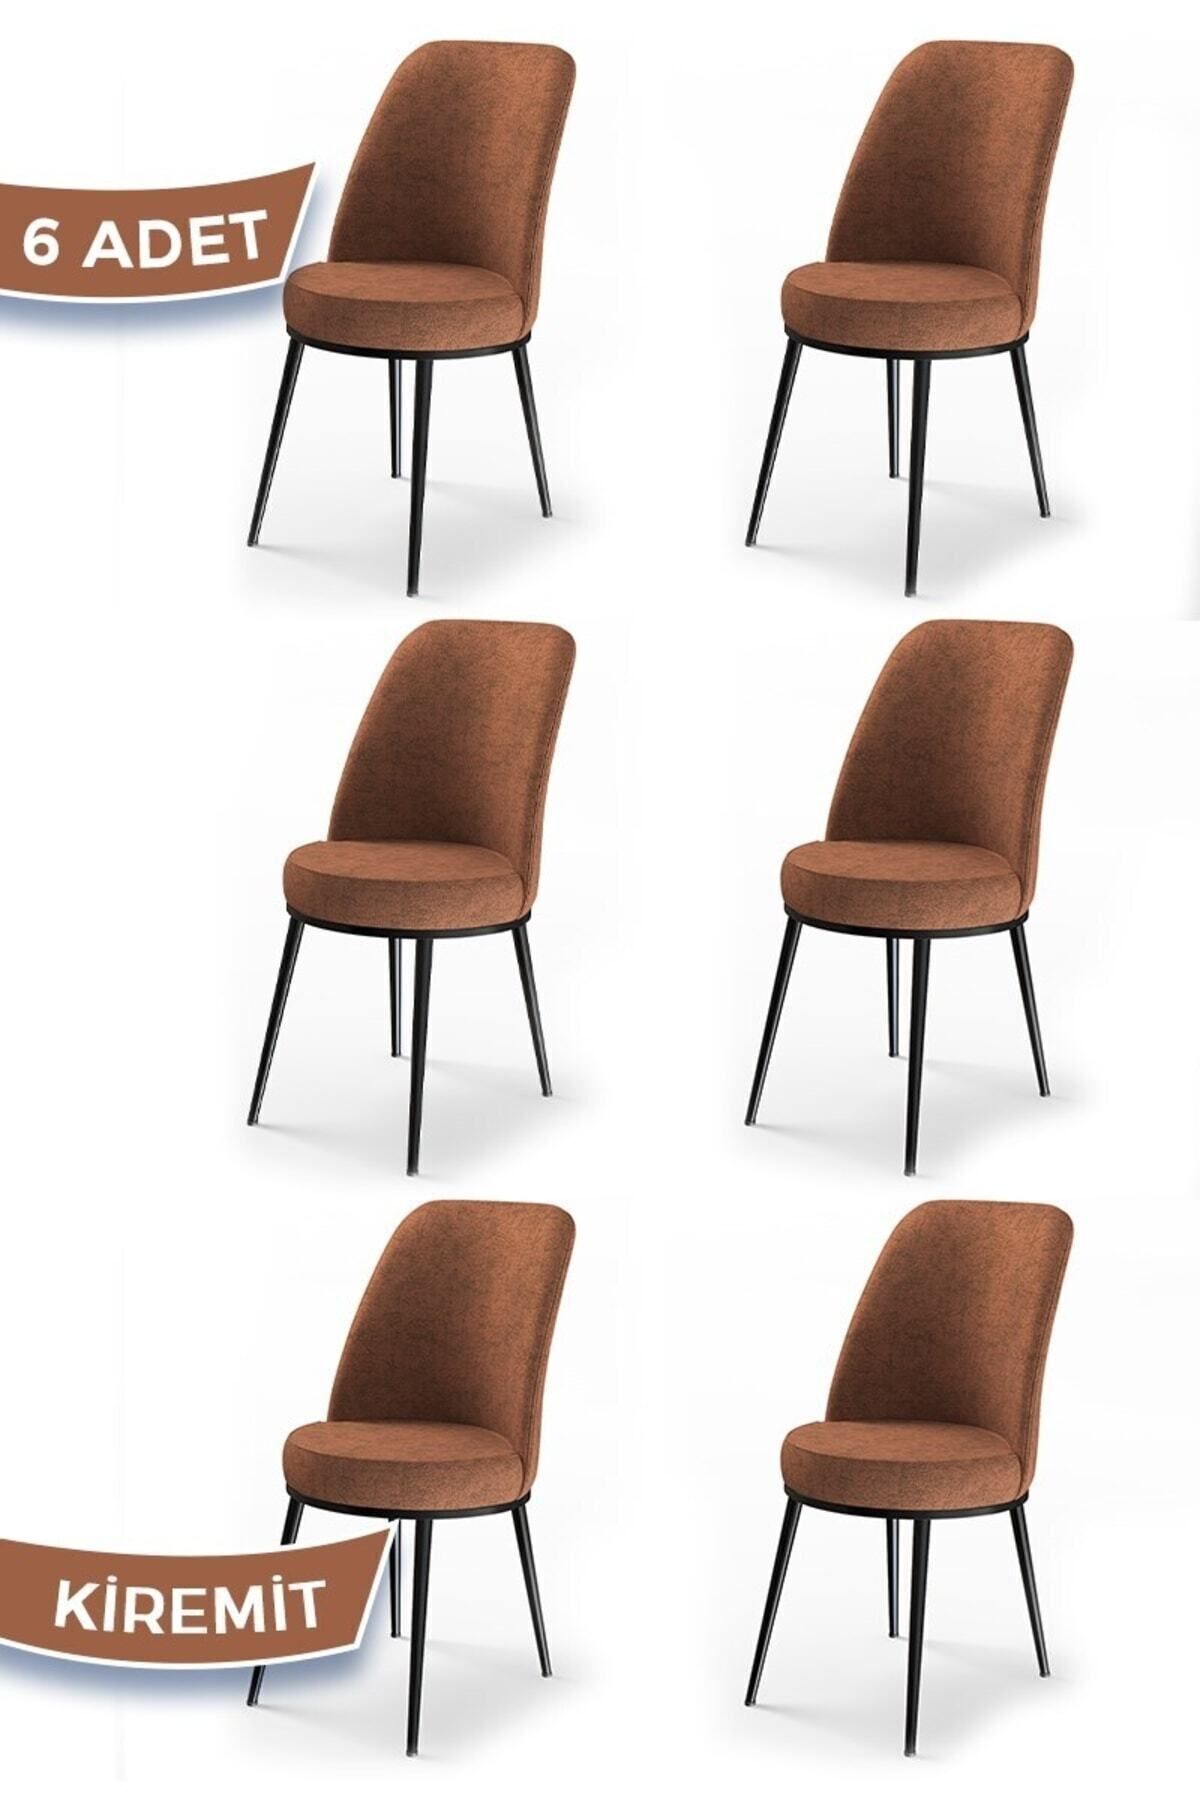 Canisa Concept Dexa Serisi, Üst Kalite Yemek Odası Sandalyesi, Metal Siyah Iskeletli, 6 Adet Kiremit Sandalye